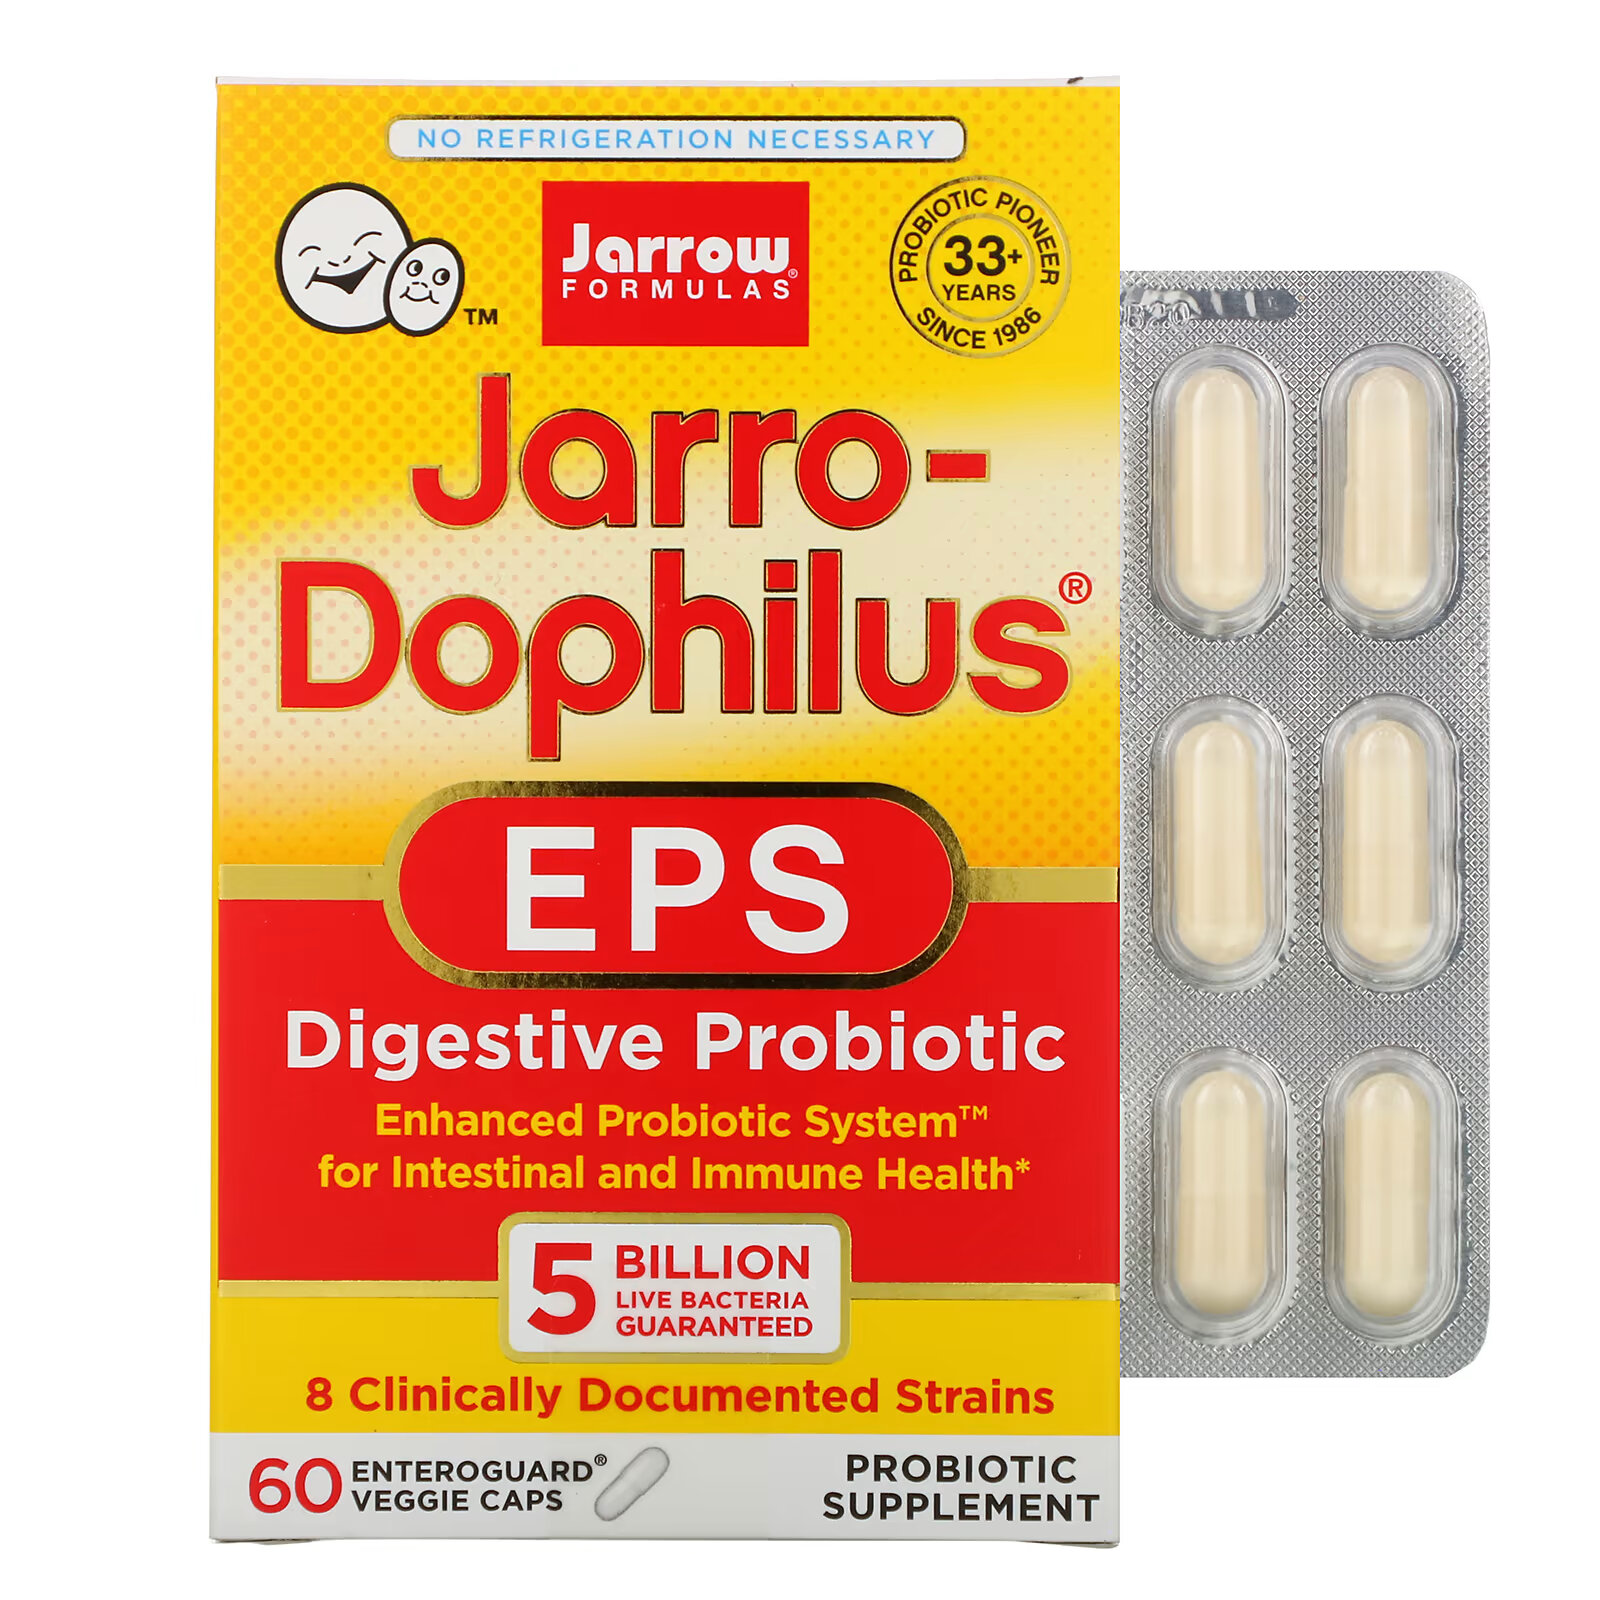 jarro dophilus eps пробиотик jarrow formulas 120 капсул Jarrow Formulas, Jarro-Dophilus EPS, пищеварительный пробиотик, 5 миллиардов, 60 растительных капсул Enteroguard